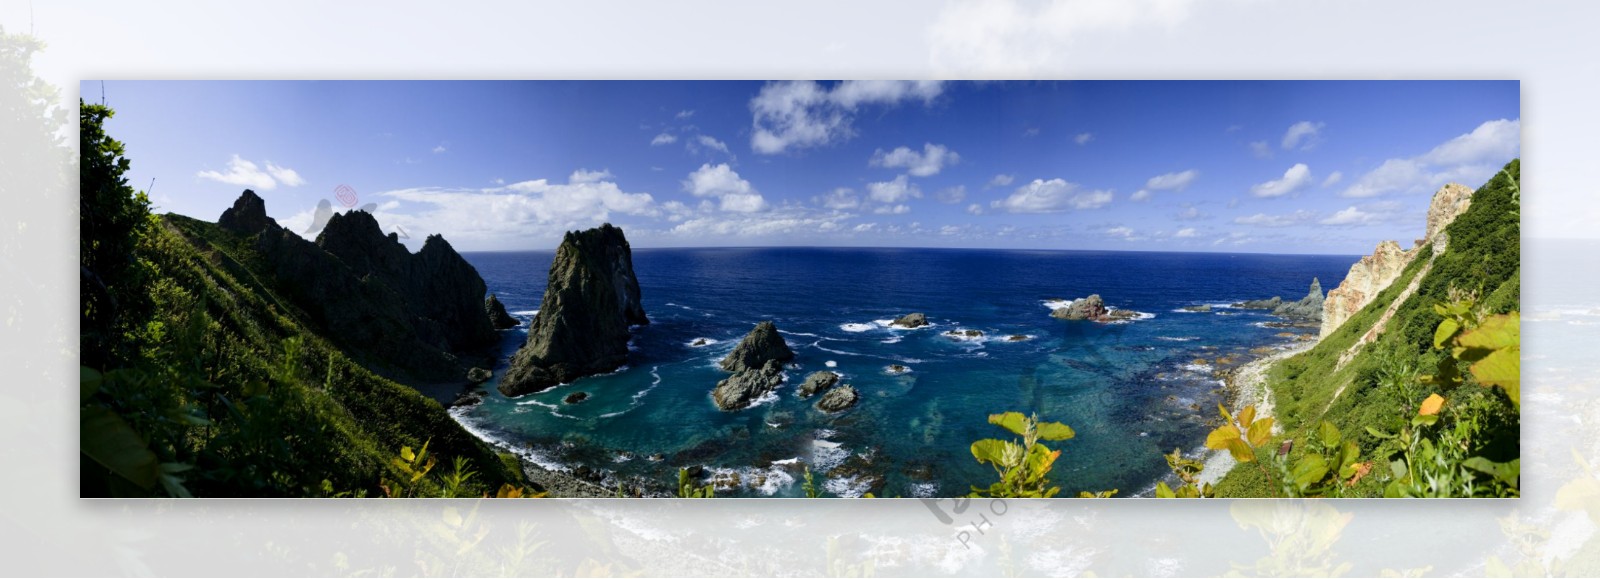 日本武意岛海岸全景图片